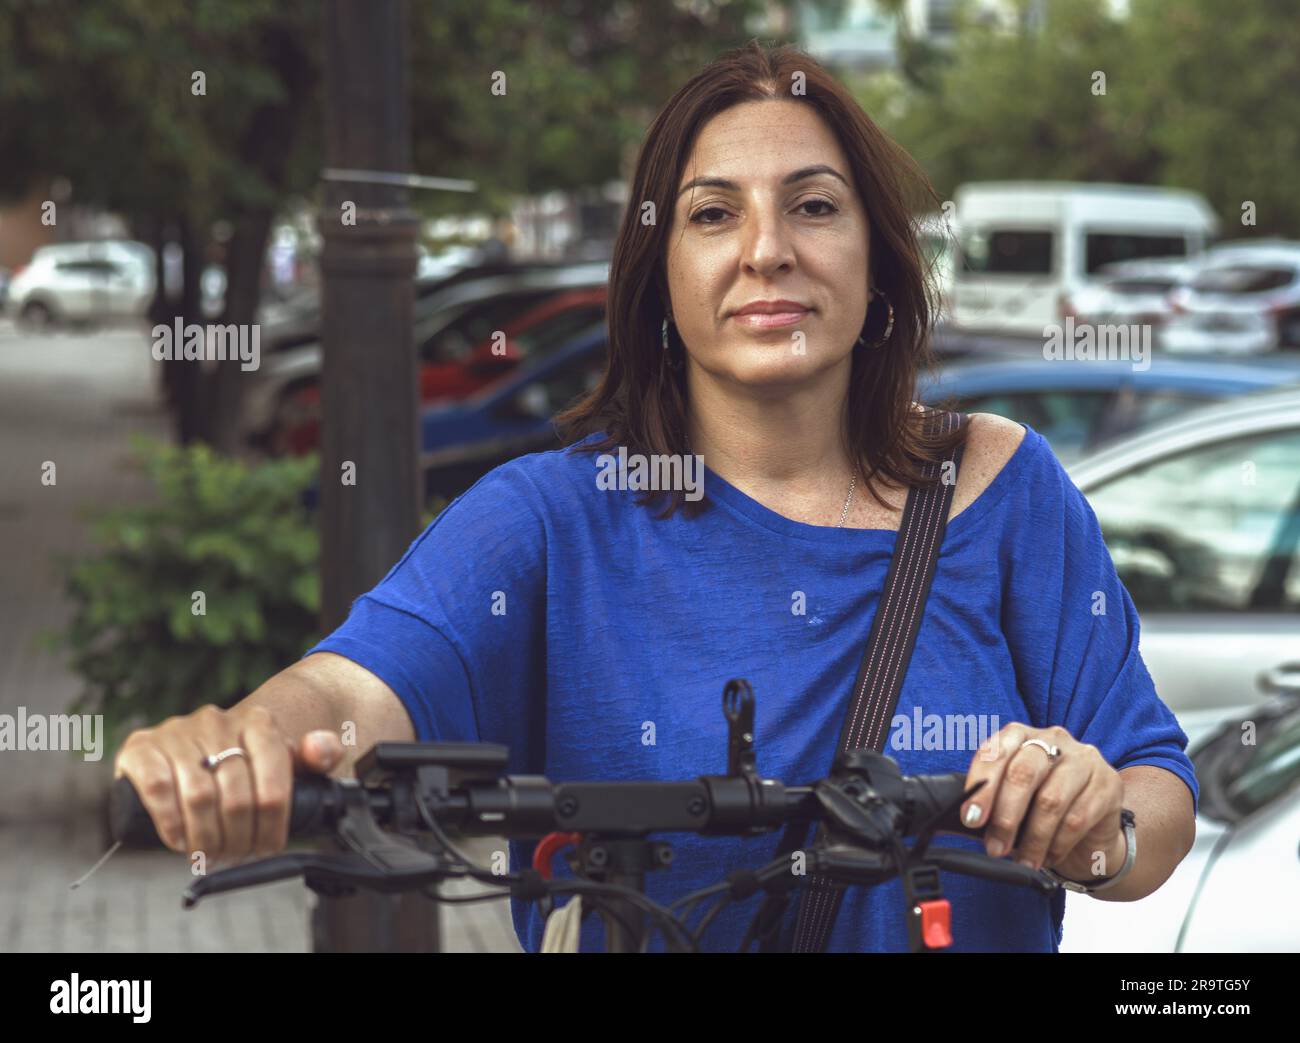 Femme brunette énergique et élégante posant avec son scooter électrique dans un cadre urbain, avec un regard confiant et direct vers la caméra Banque D'Images